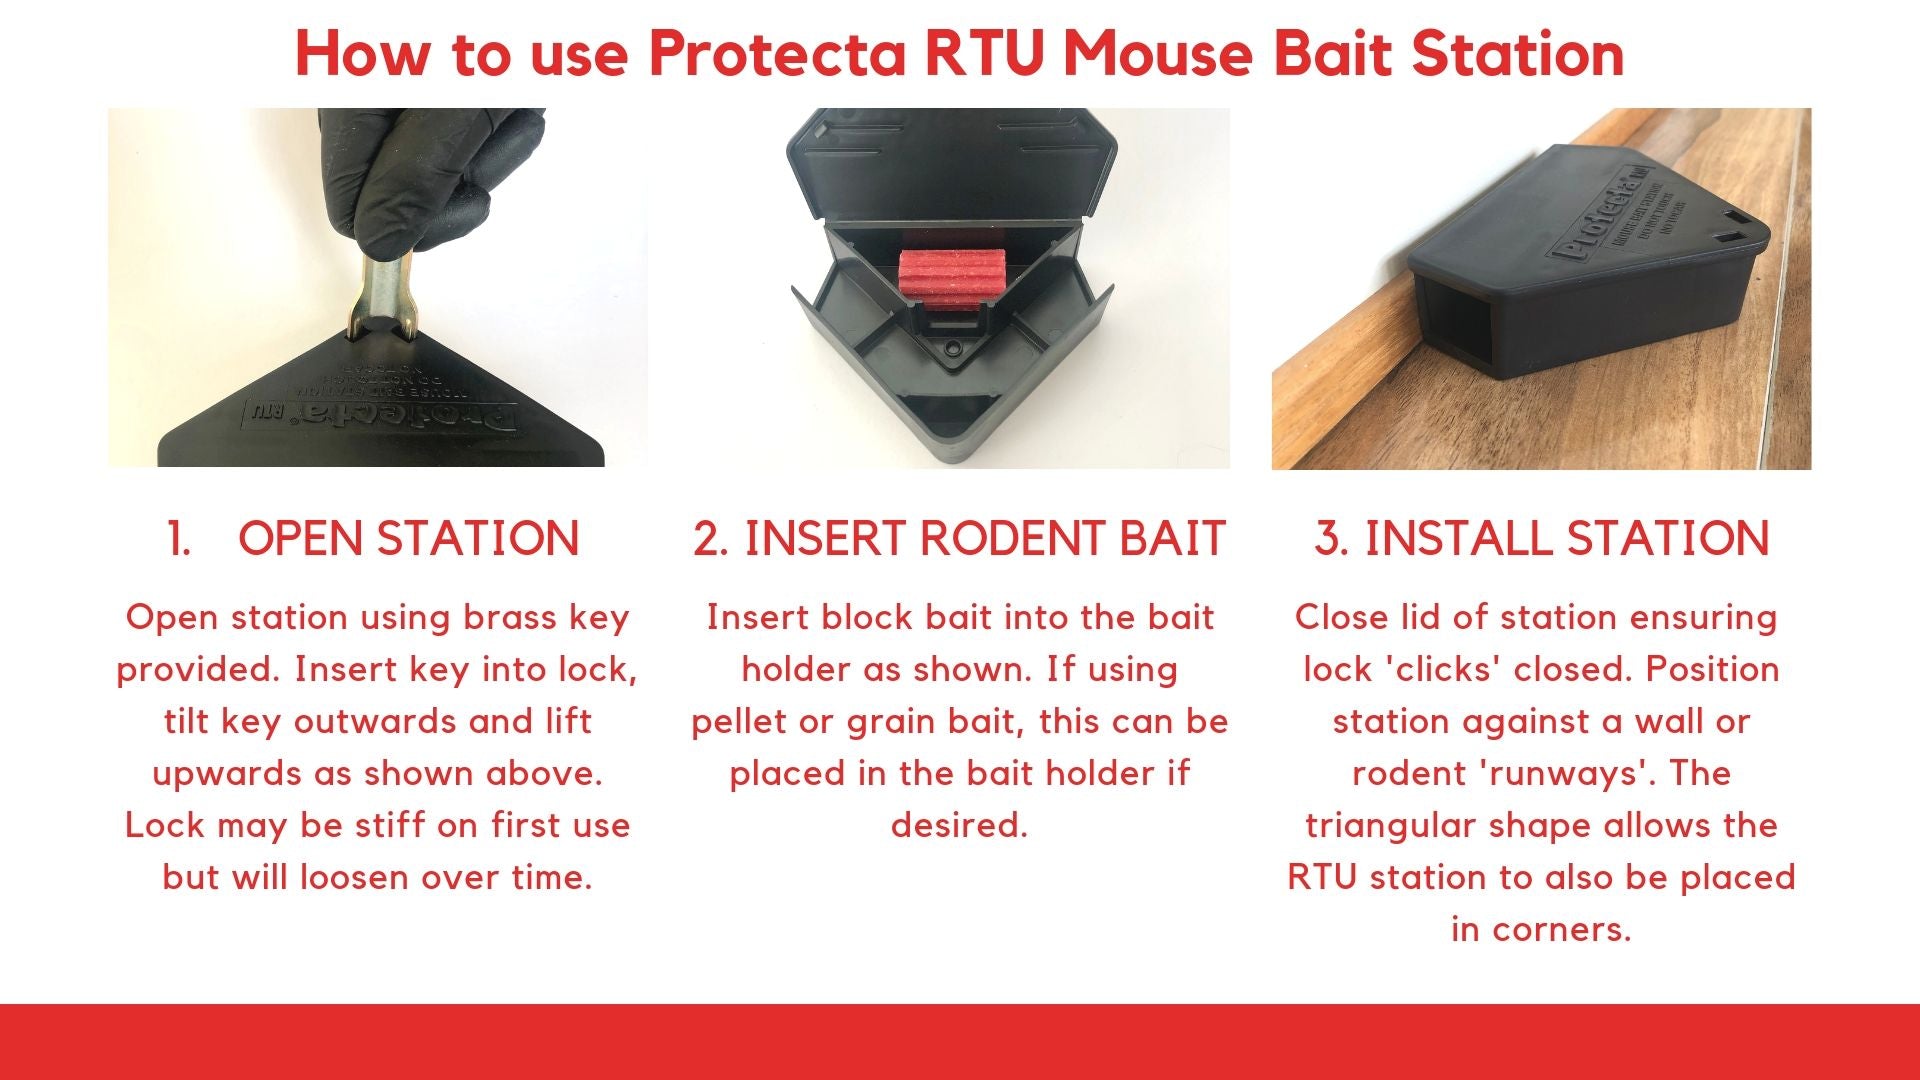 Protecta RTU Bait Station Instructions